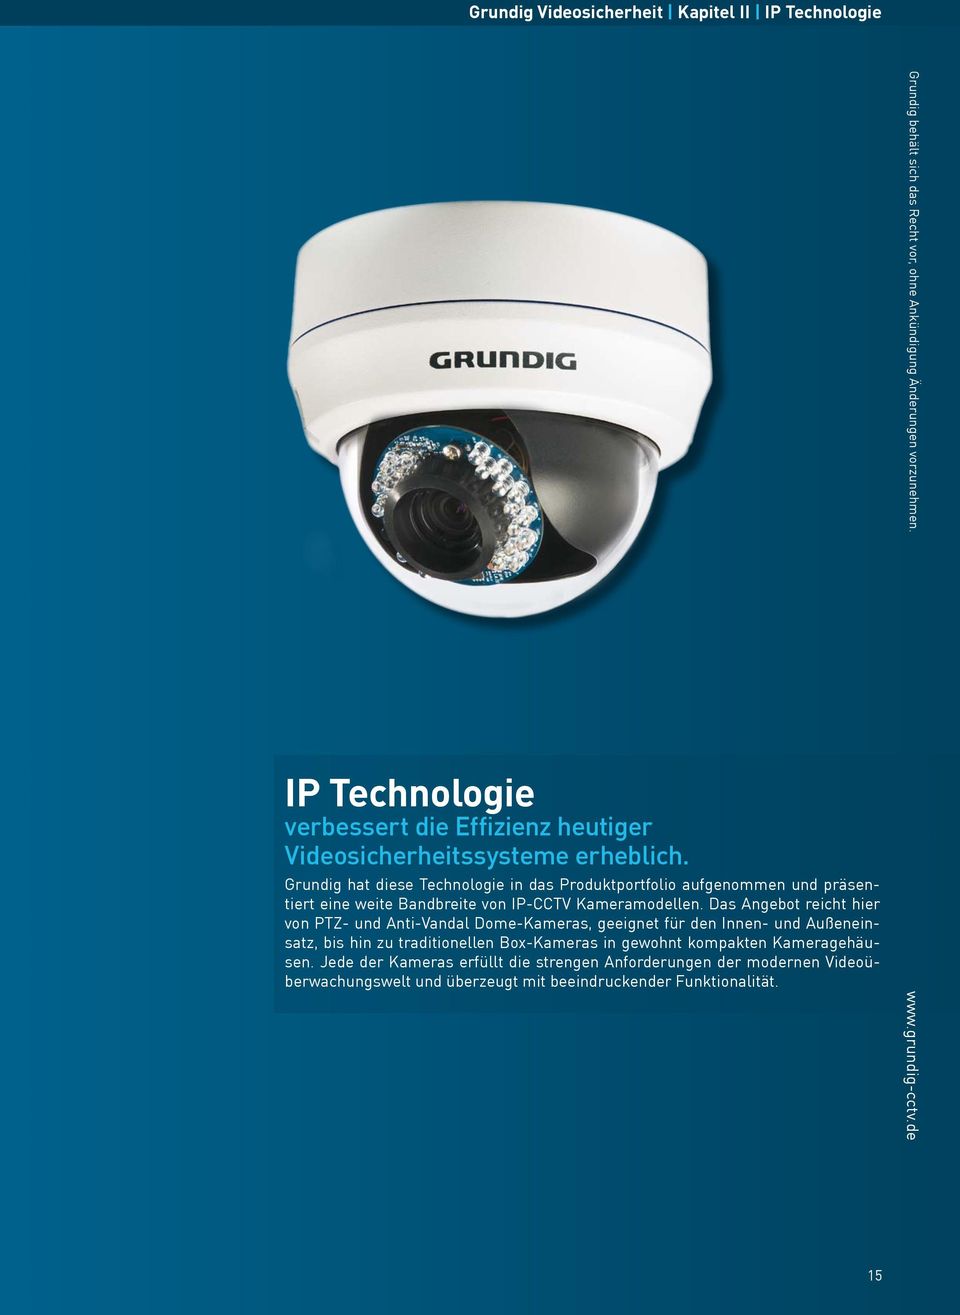 Grundig hat diese Technologie in das Produktportfolio aufgenommen und präsentiert eine weite Bandbreite von IP-CCTV Kameramodellen.